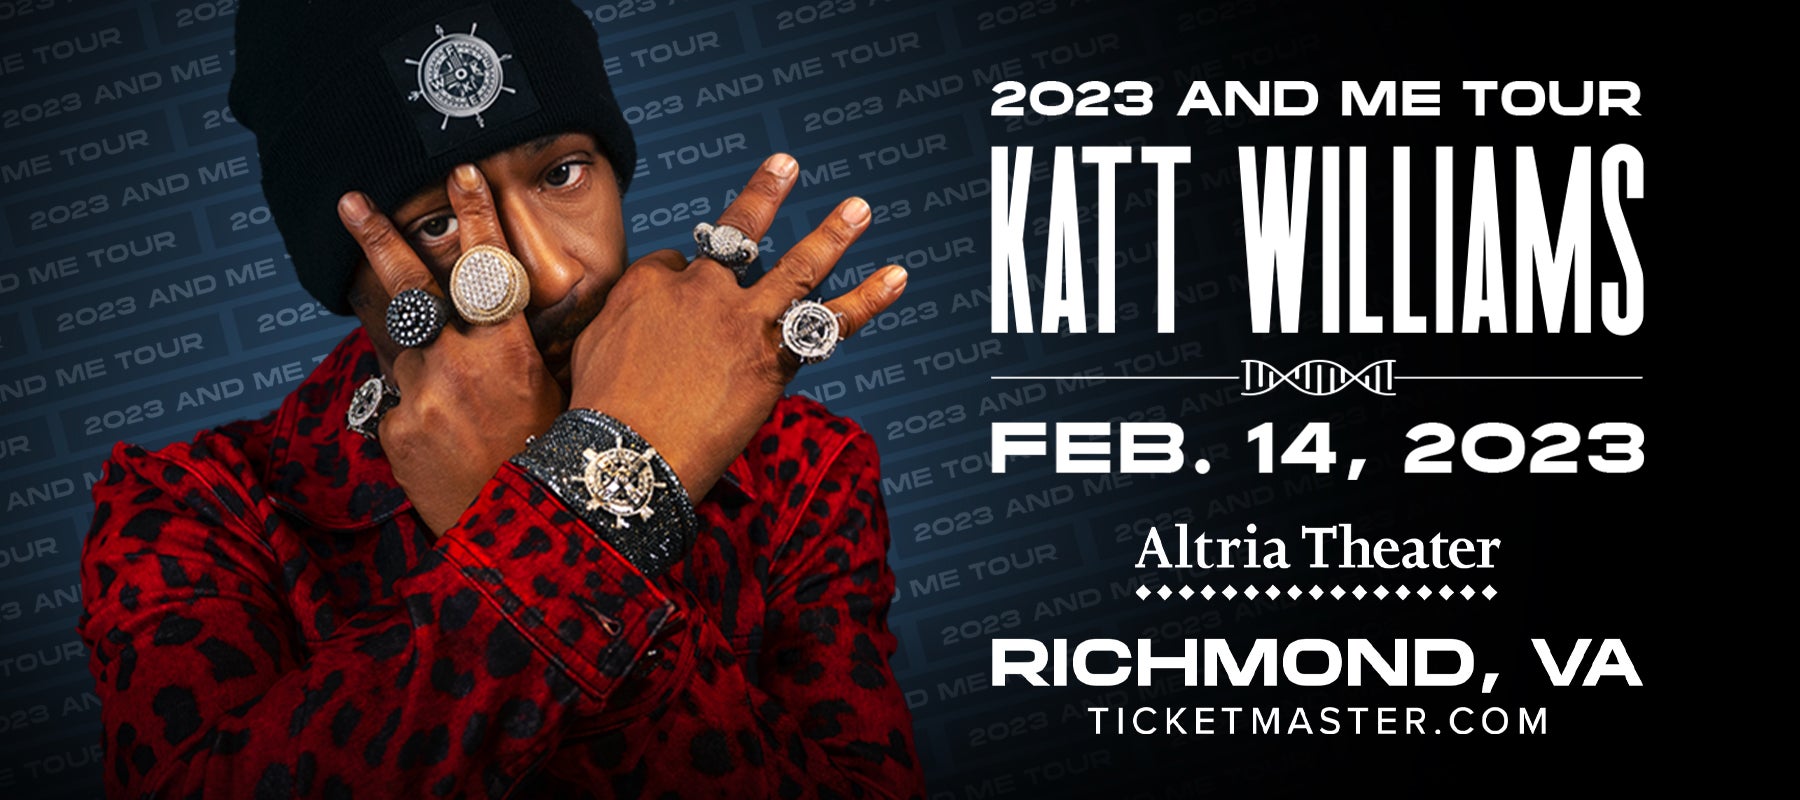 katt williams tour 2022 opening act